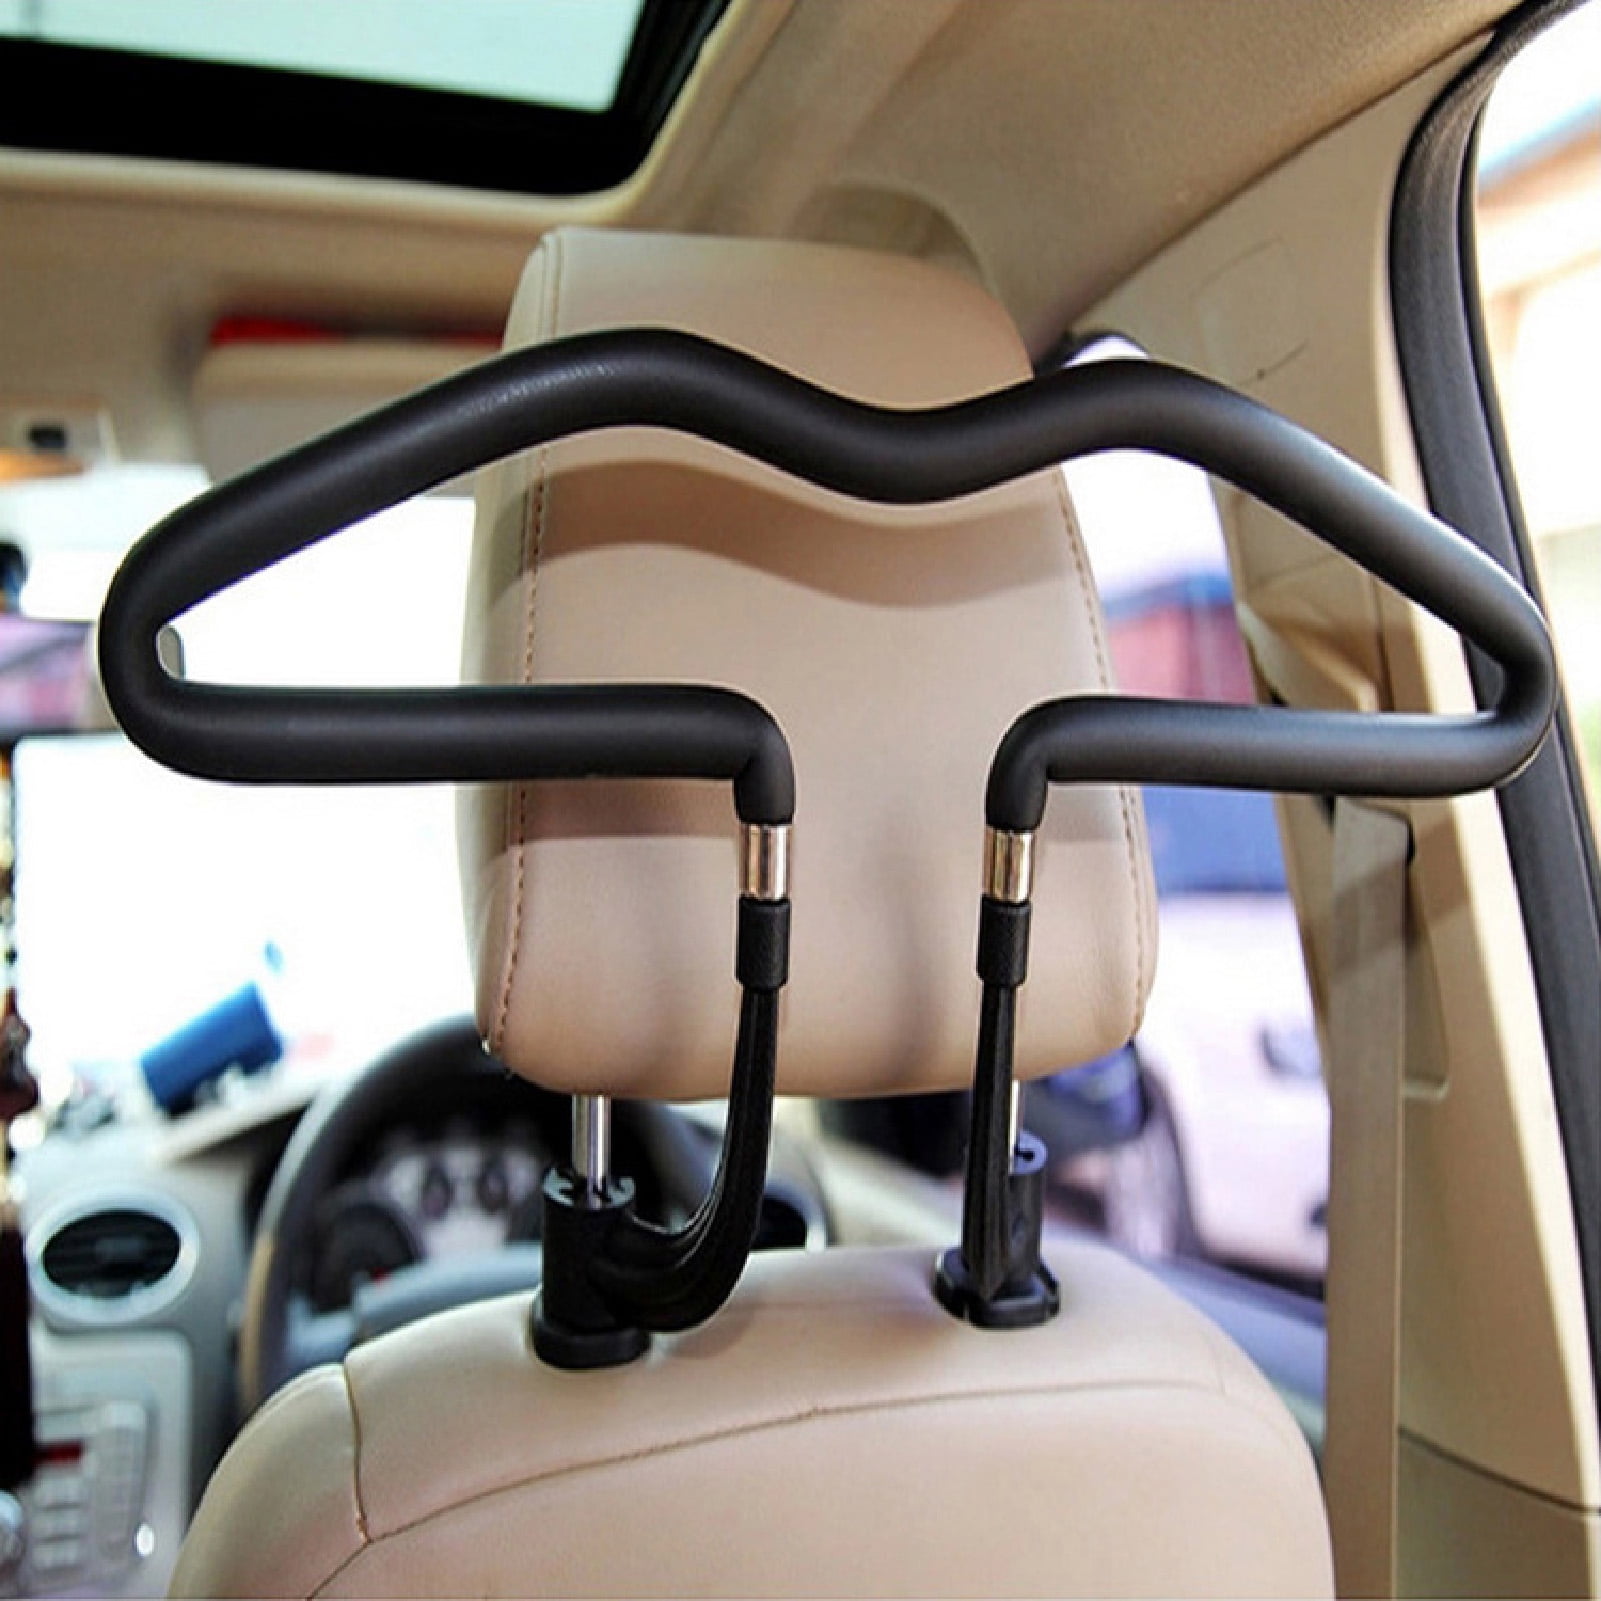 1*Car Adjustable Seat Headrest Jacket Coat Clothes Hanger Holder Stainless Steel 